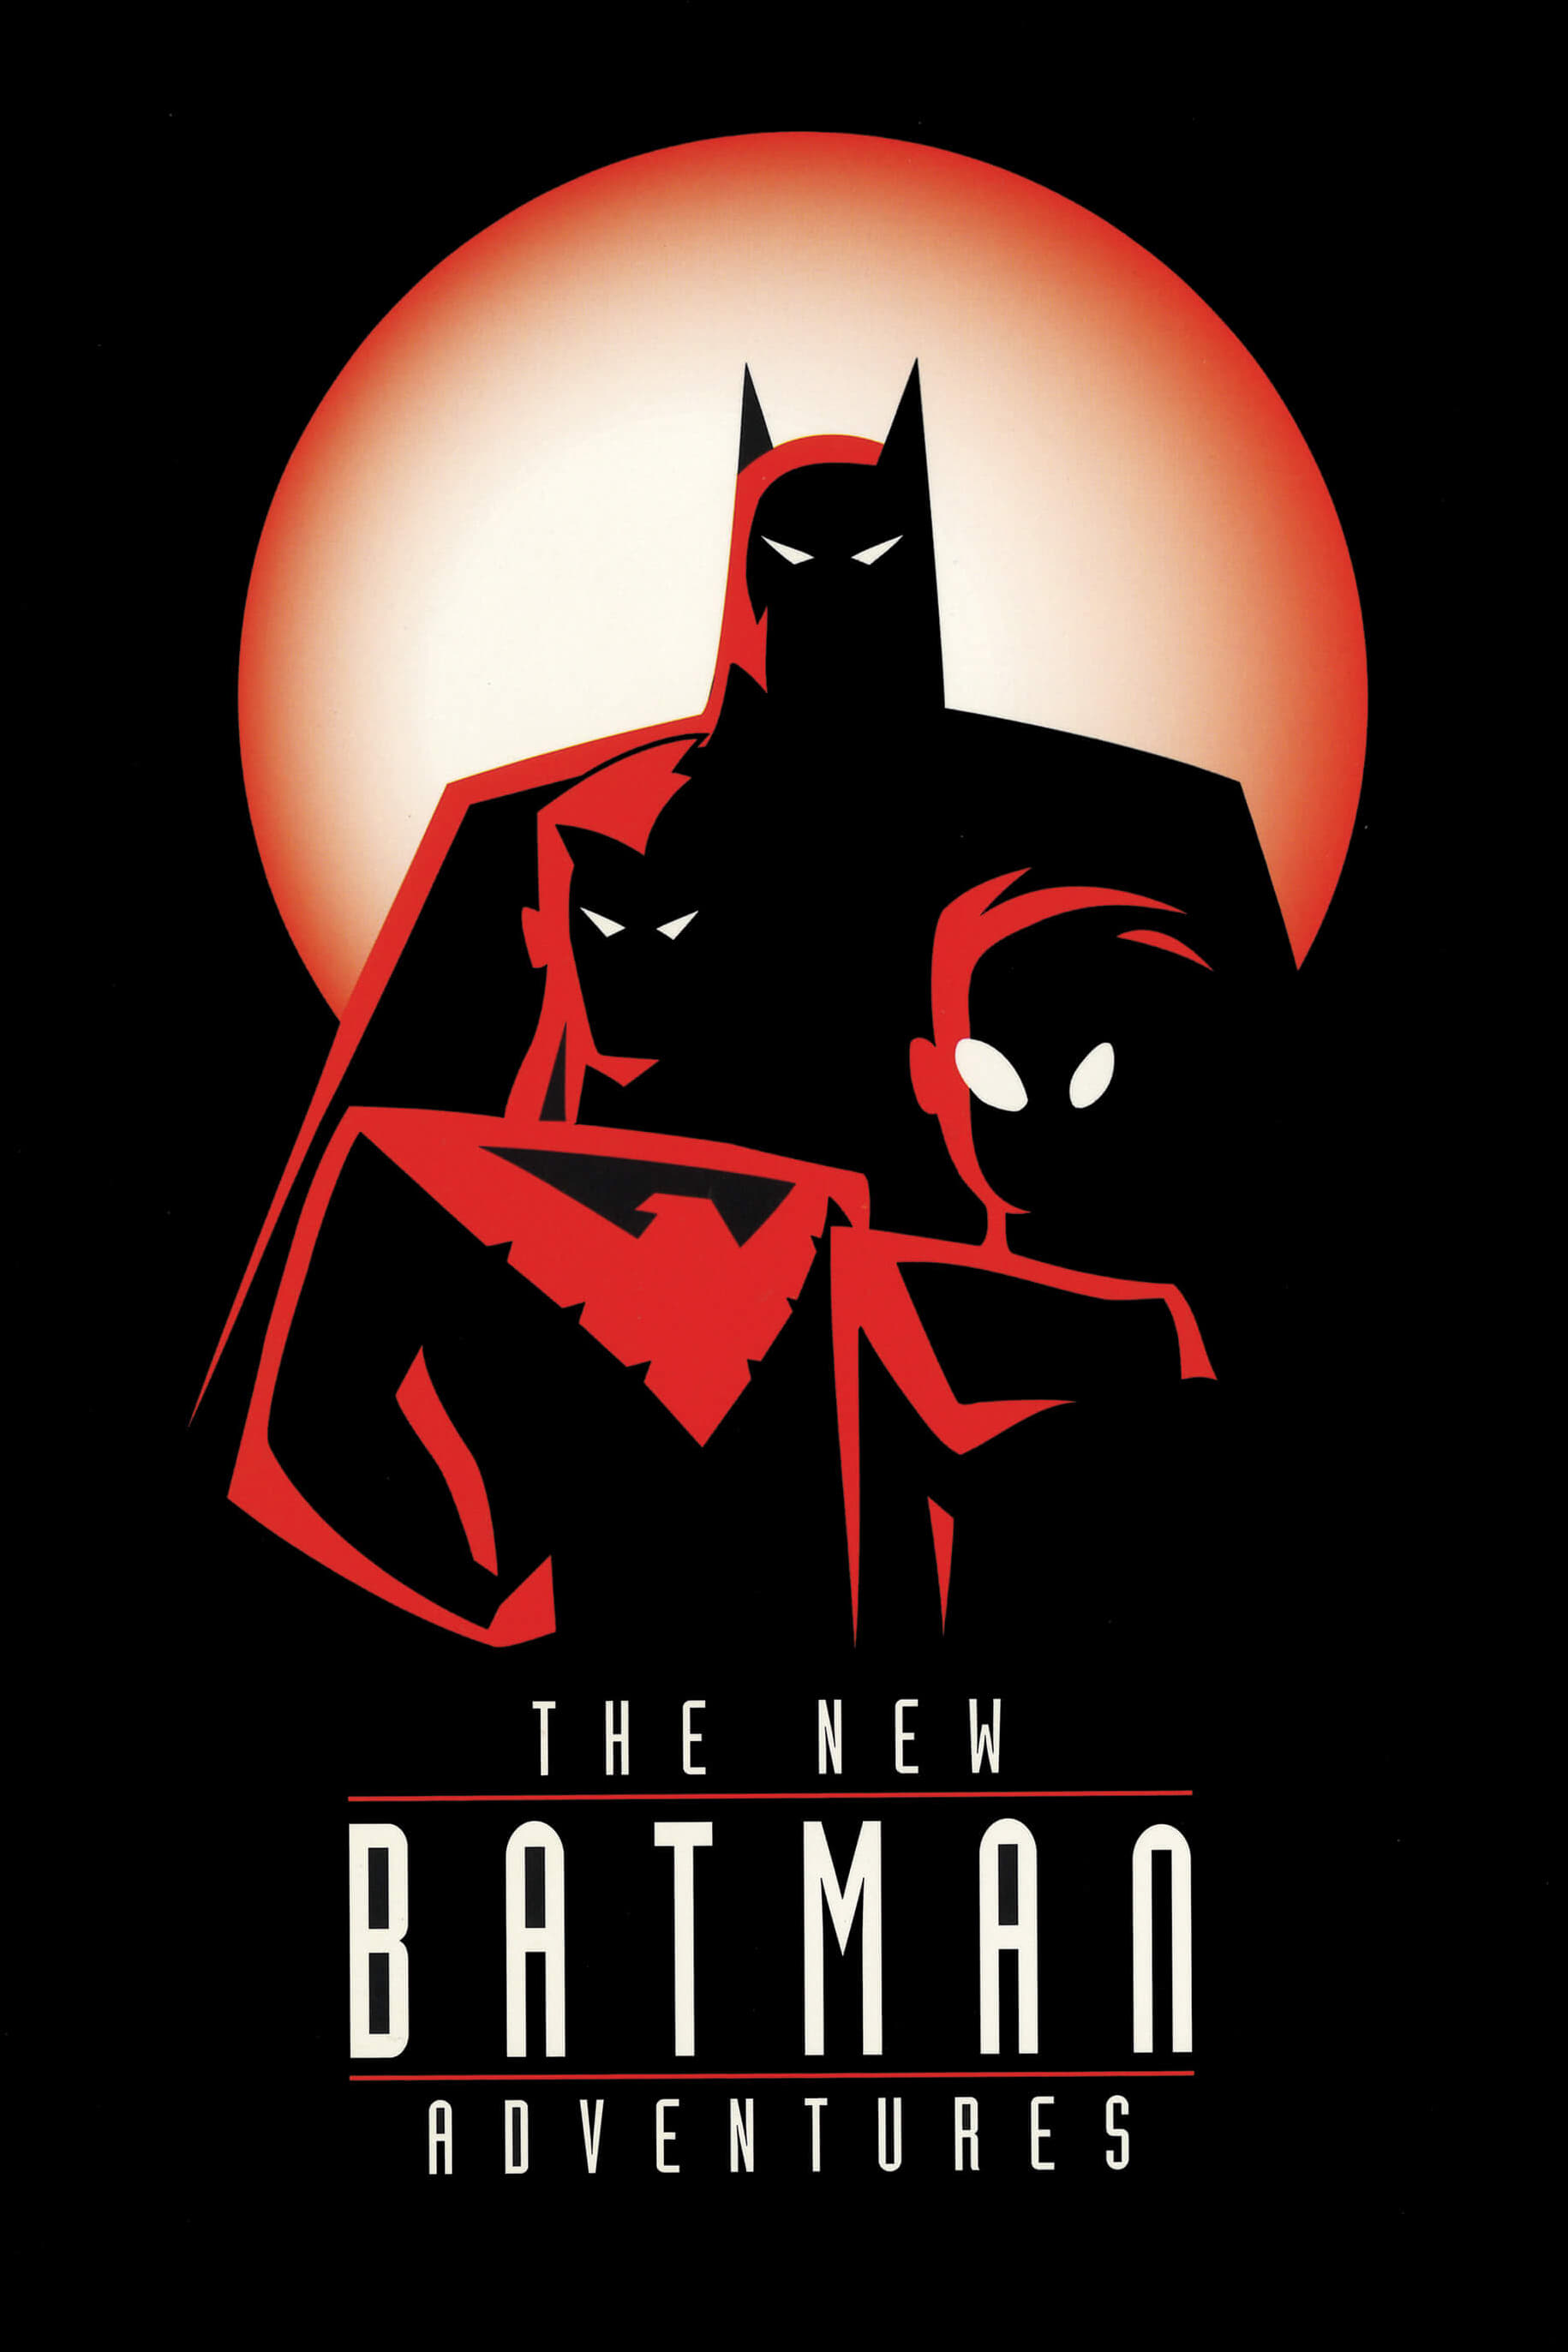 The New Batman Adventures TV Shows About Vigilante